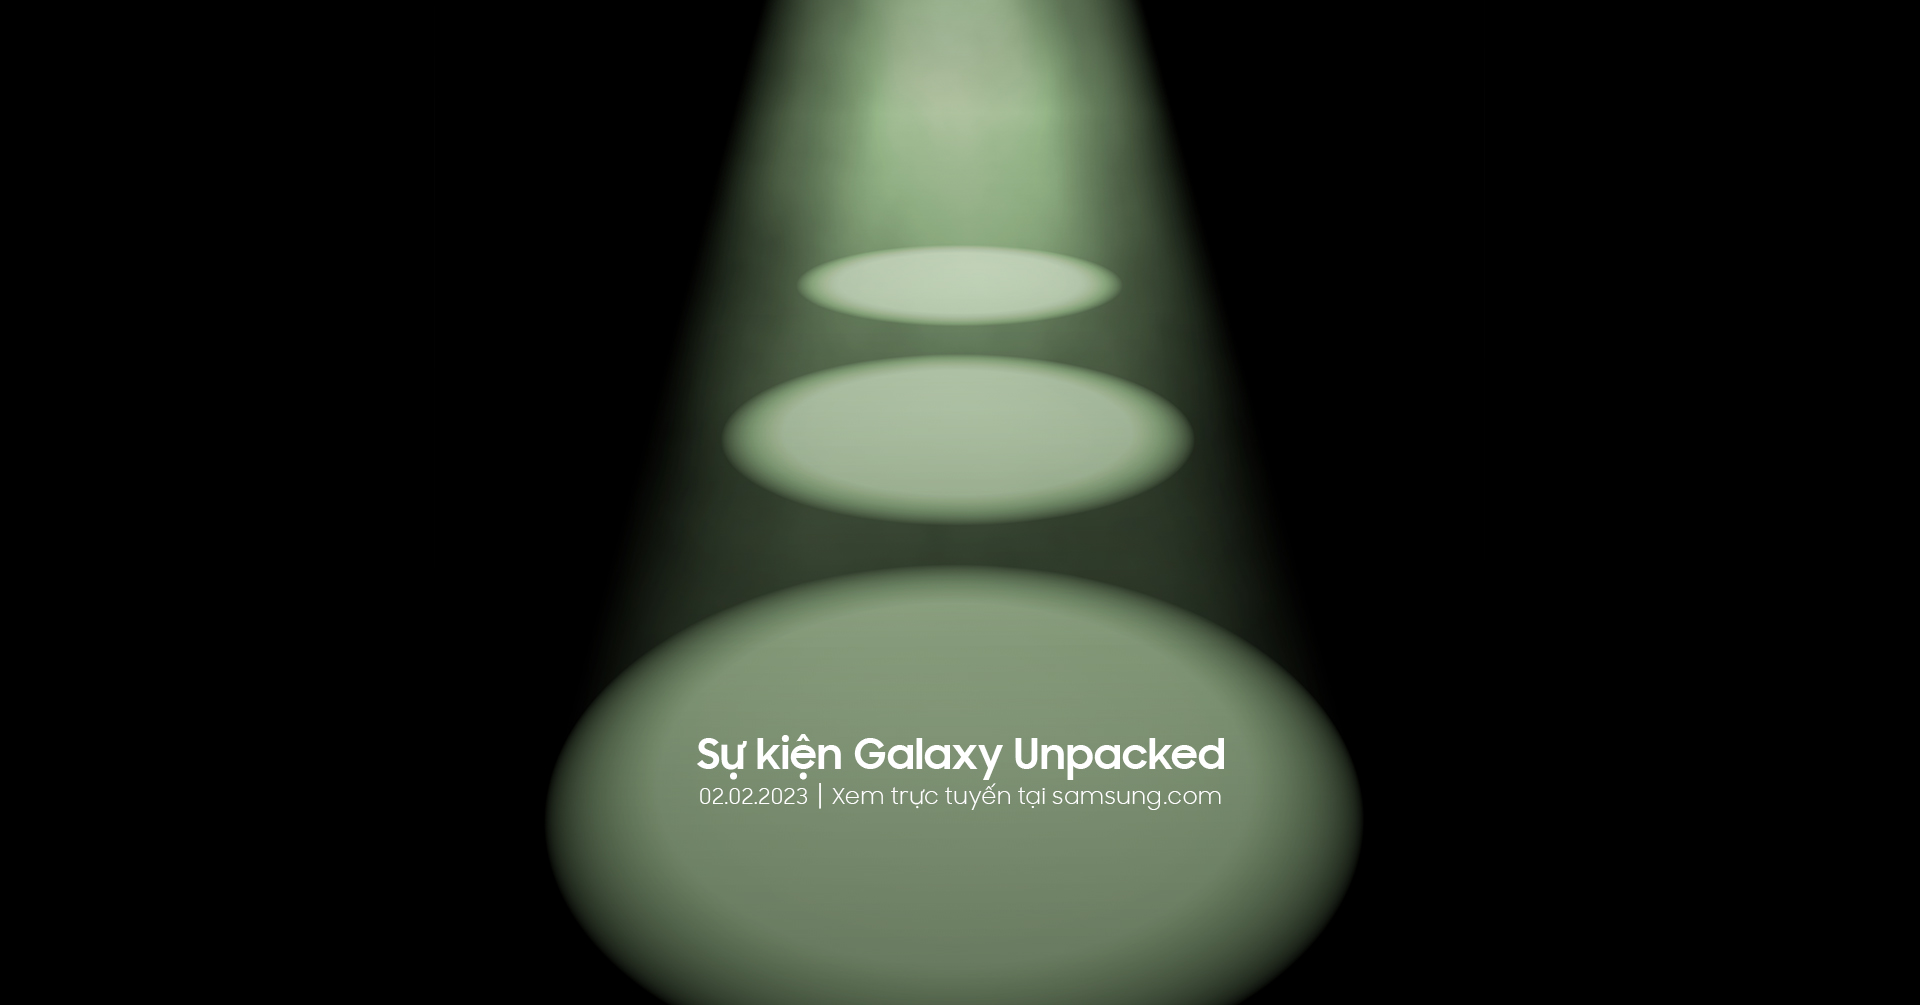 Sự kiện Samsung Galaxy Unpacked 2023 sẽ được tổ chức vào ngày 2/2 tới